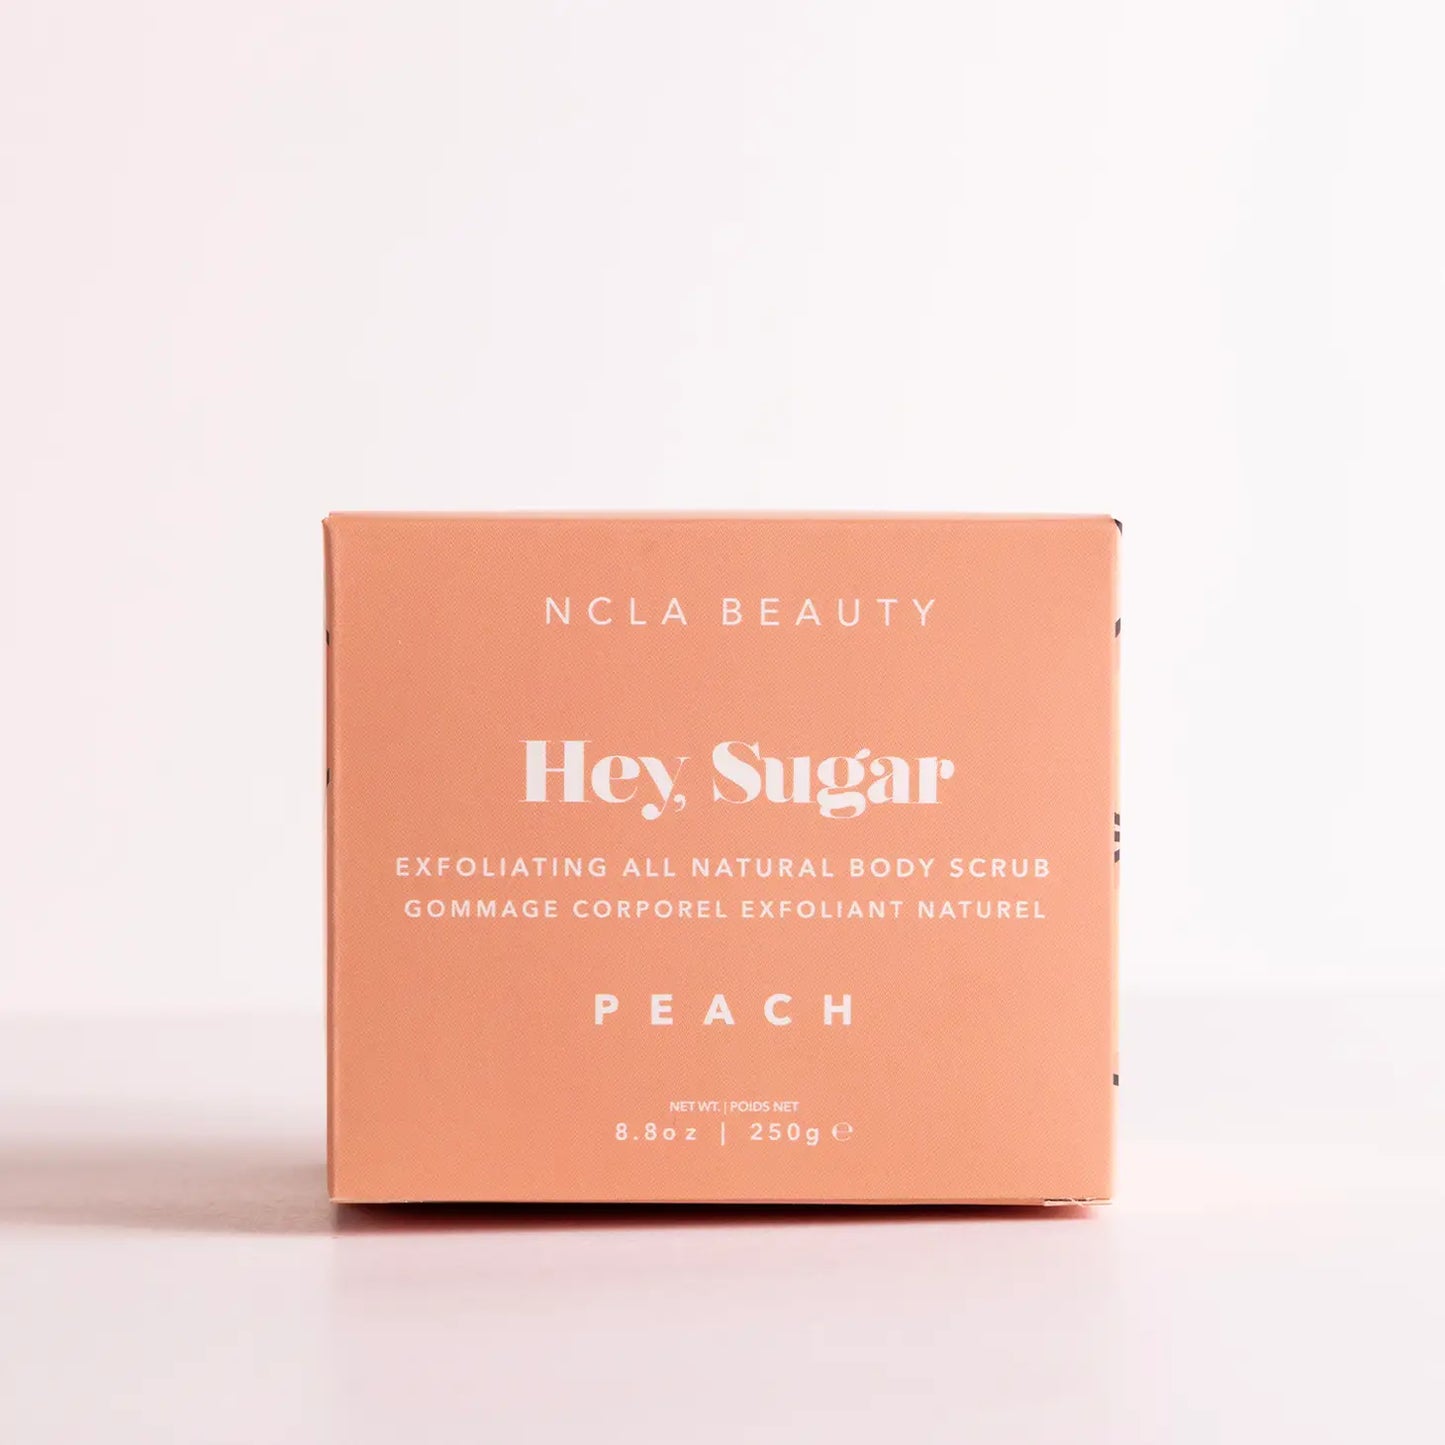 Hey, Sugar Exfoliating Natural Body Scrub - Peach